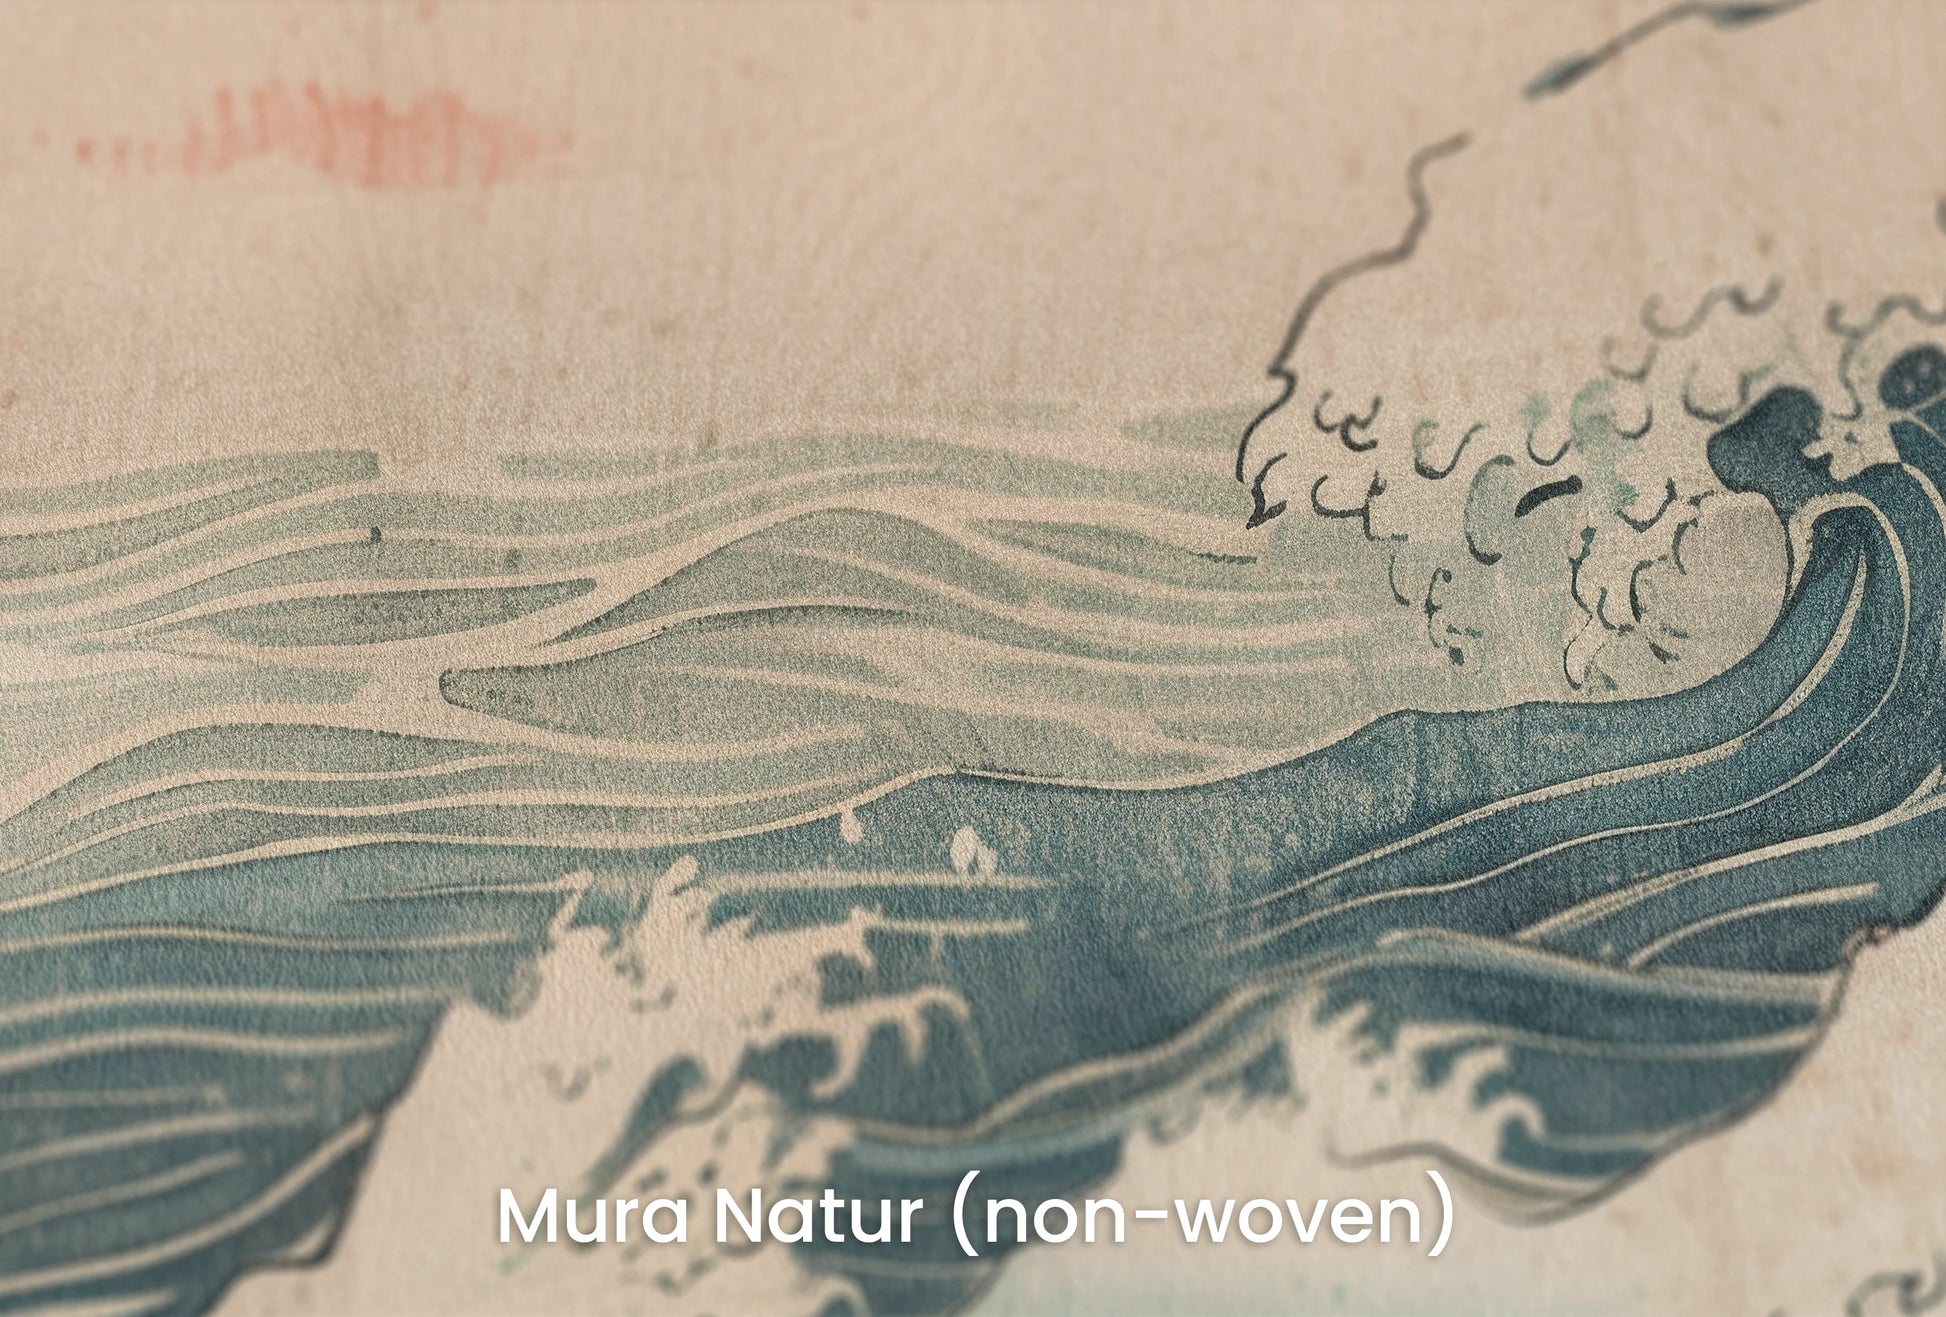 Zbliżenie na artystyczną fototapetę o nazwie Edo's Sunrise na podłożu Mura Natur (non-woven) - naturalne i ekologiczne podłoże.